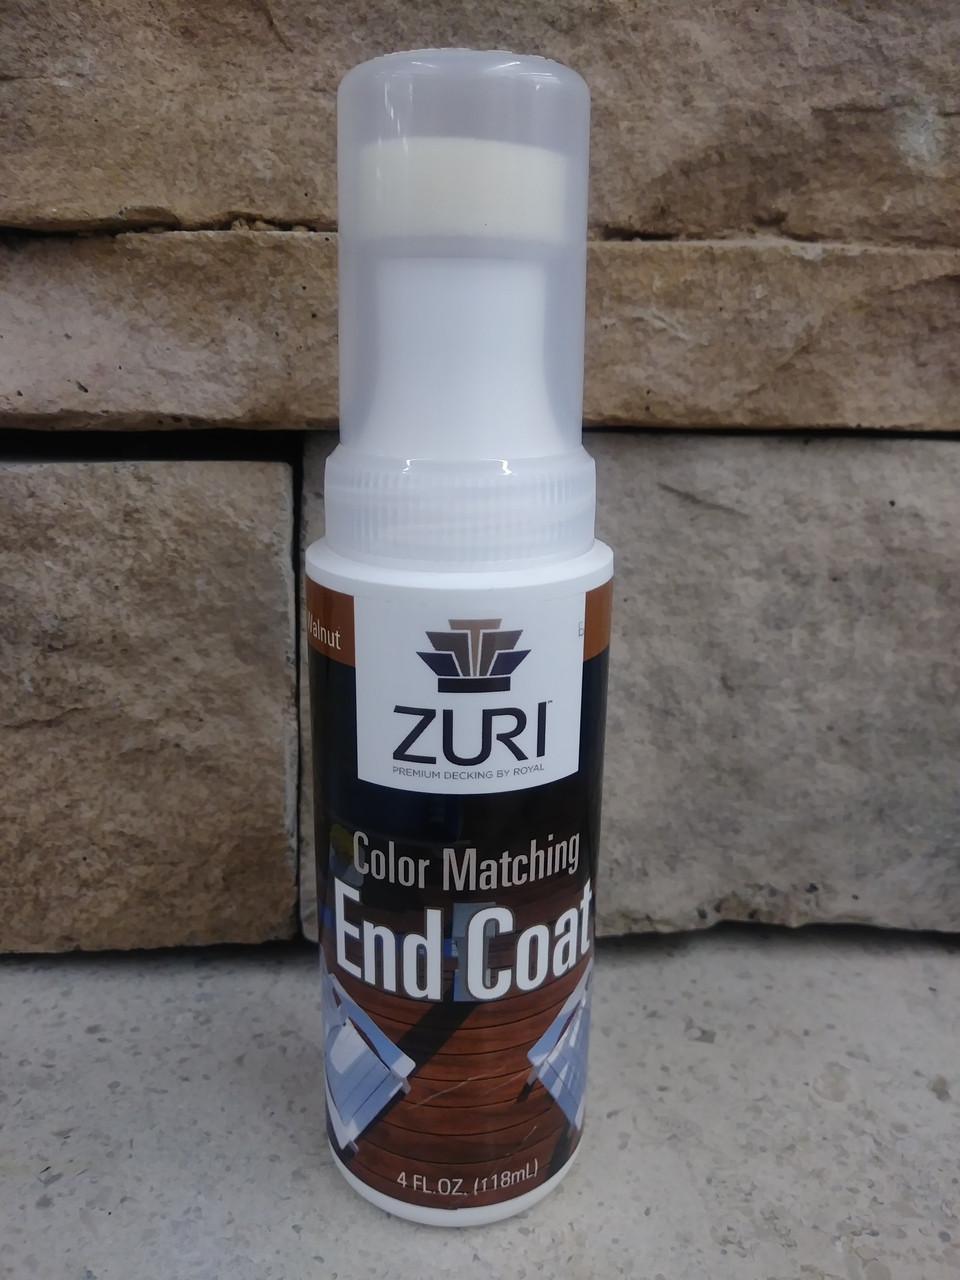 Zuri End Coat Paint with Sponge Applicator - 4 oz.